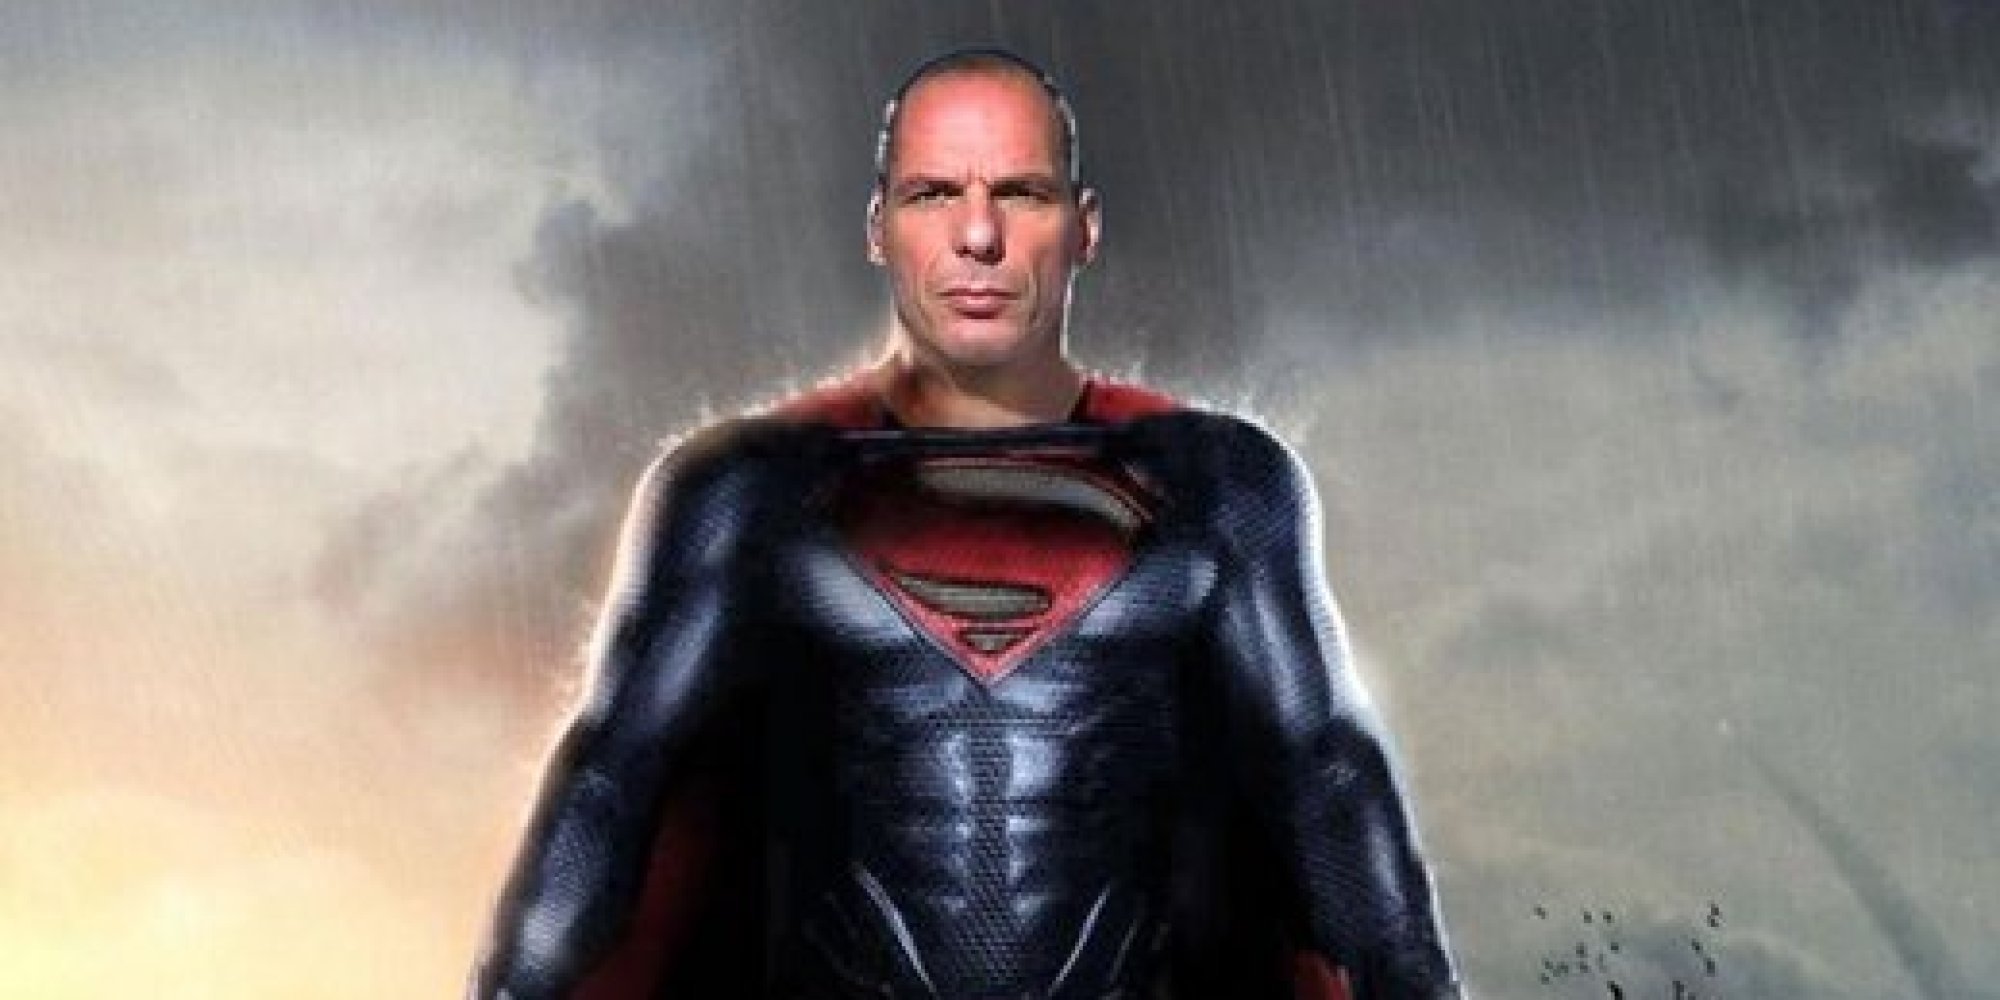 varufakis superman